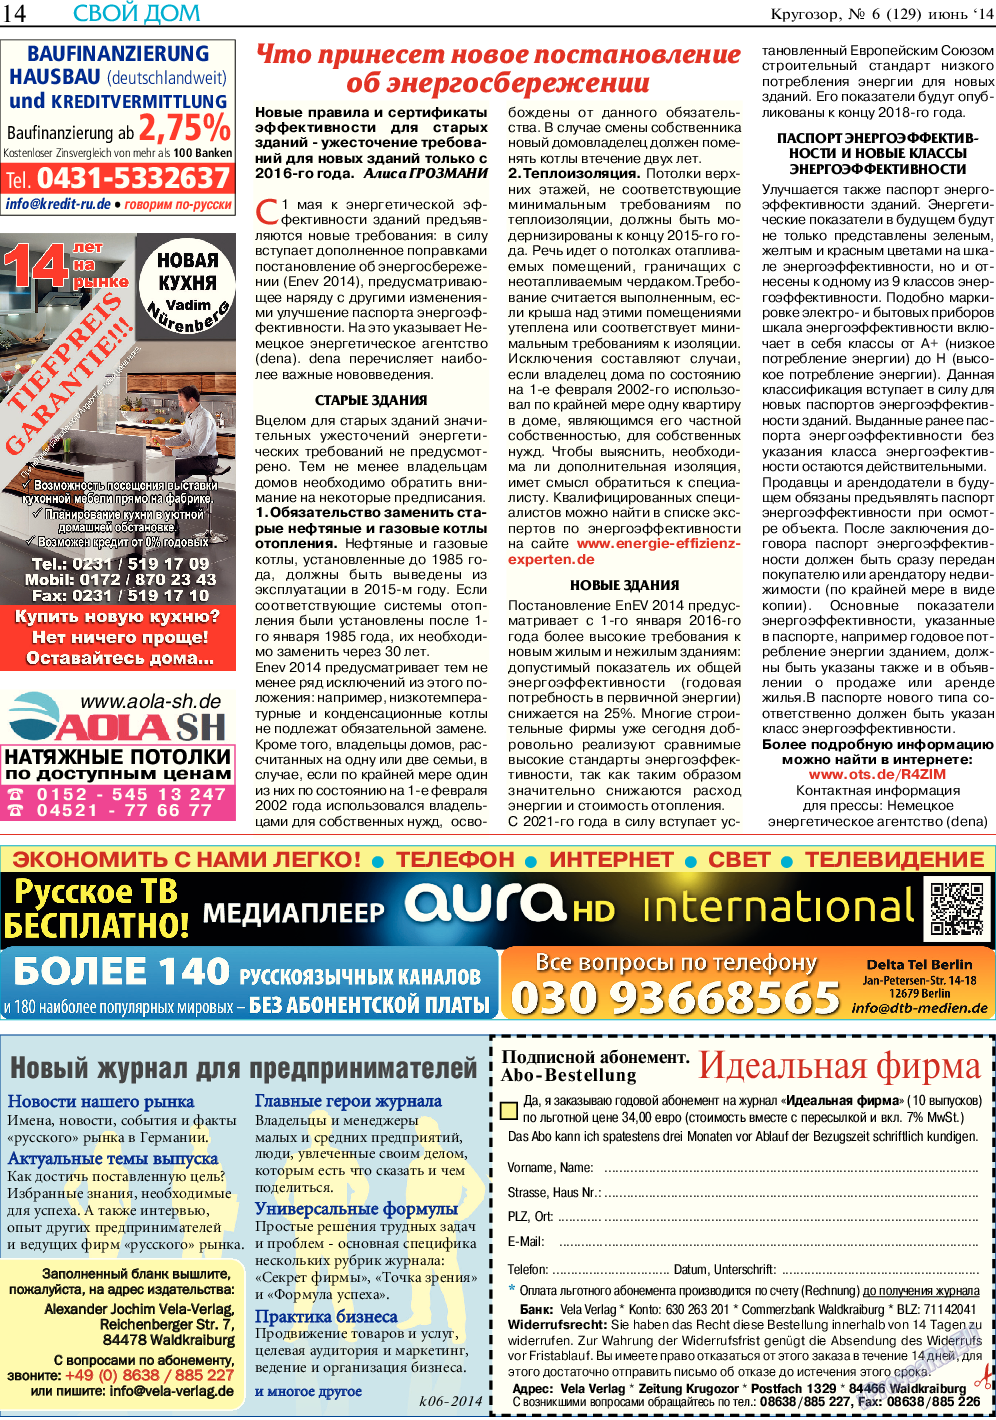 Кругозор, газета. 2014 №6 стр.14